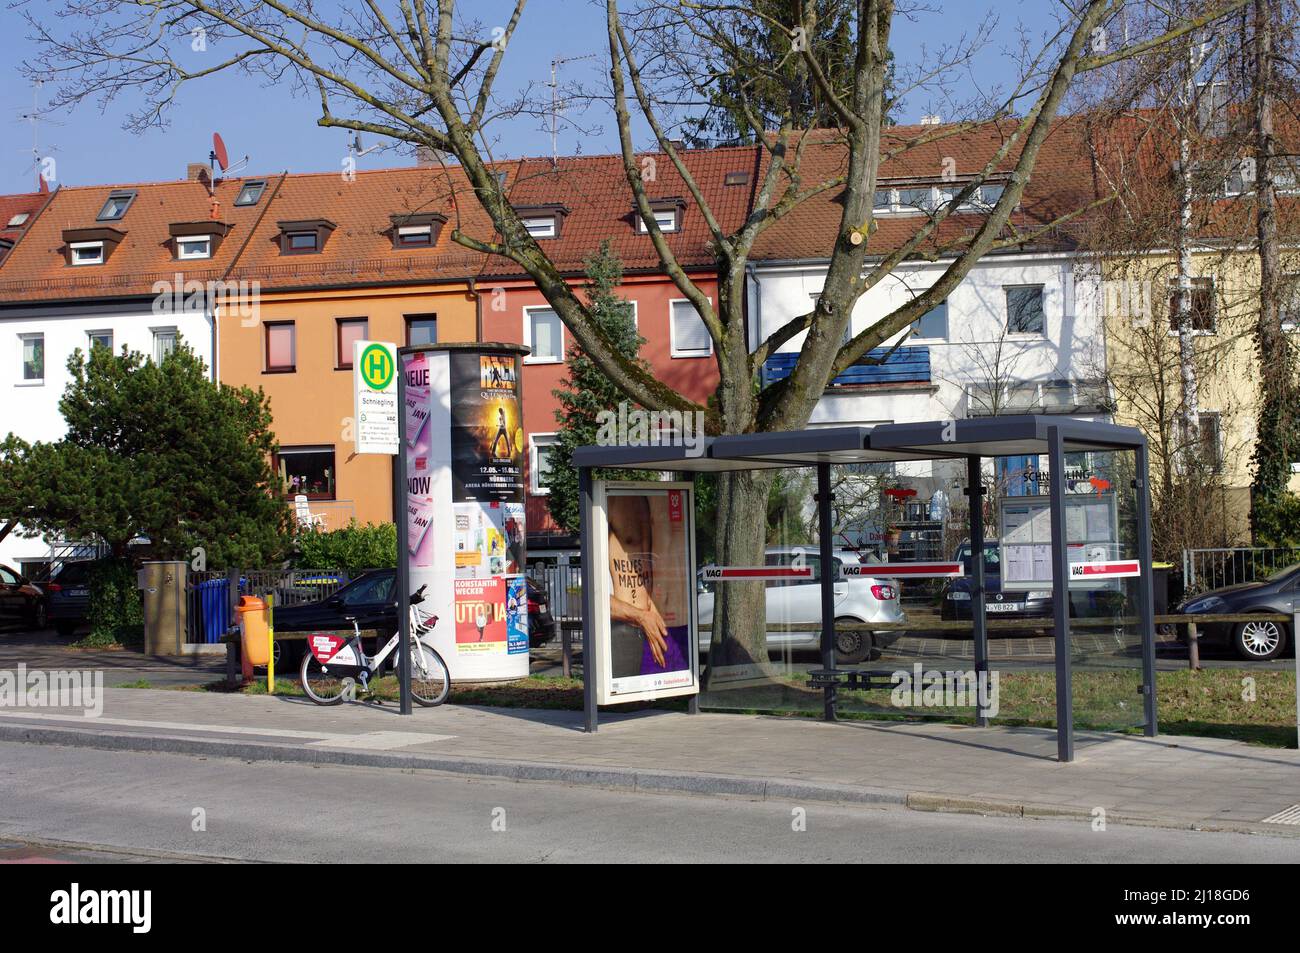 Bushaltestelle mit Leihrad, symbolisches Bild für neue Mobilität in der Stadt Stockfoto